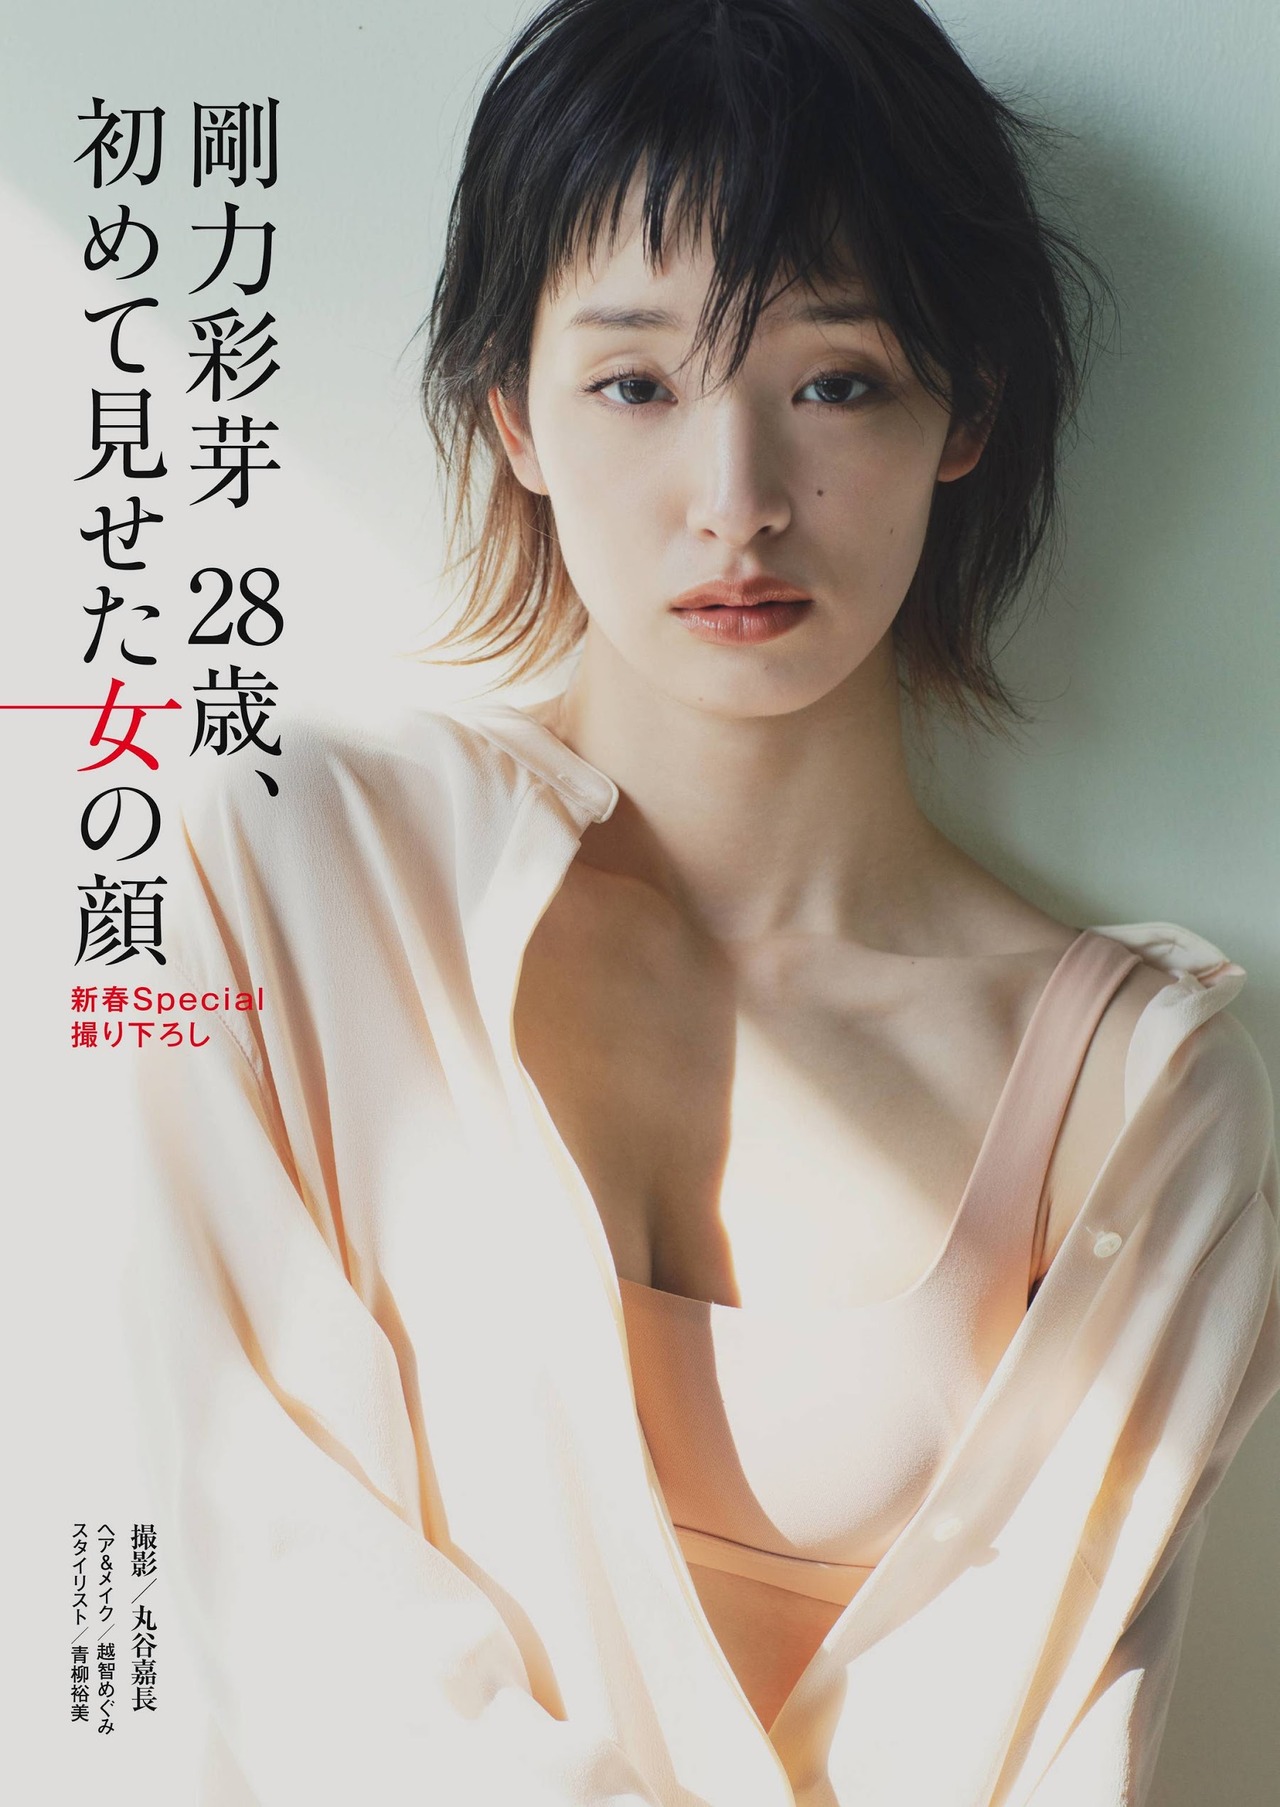 《Ayame Goriki 剛力彩芽, Shukan Post 2021.01.01 (週刊ポスト 2021年1月1日号)》